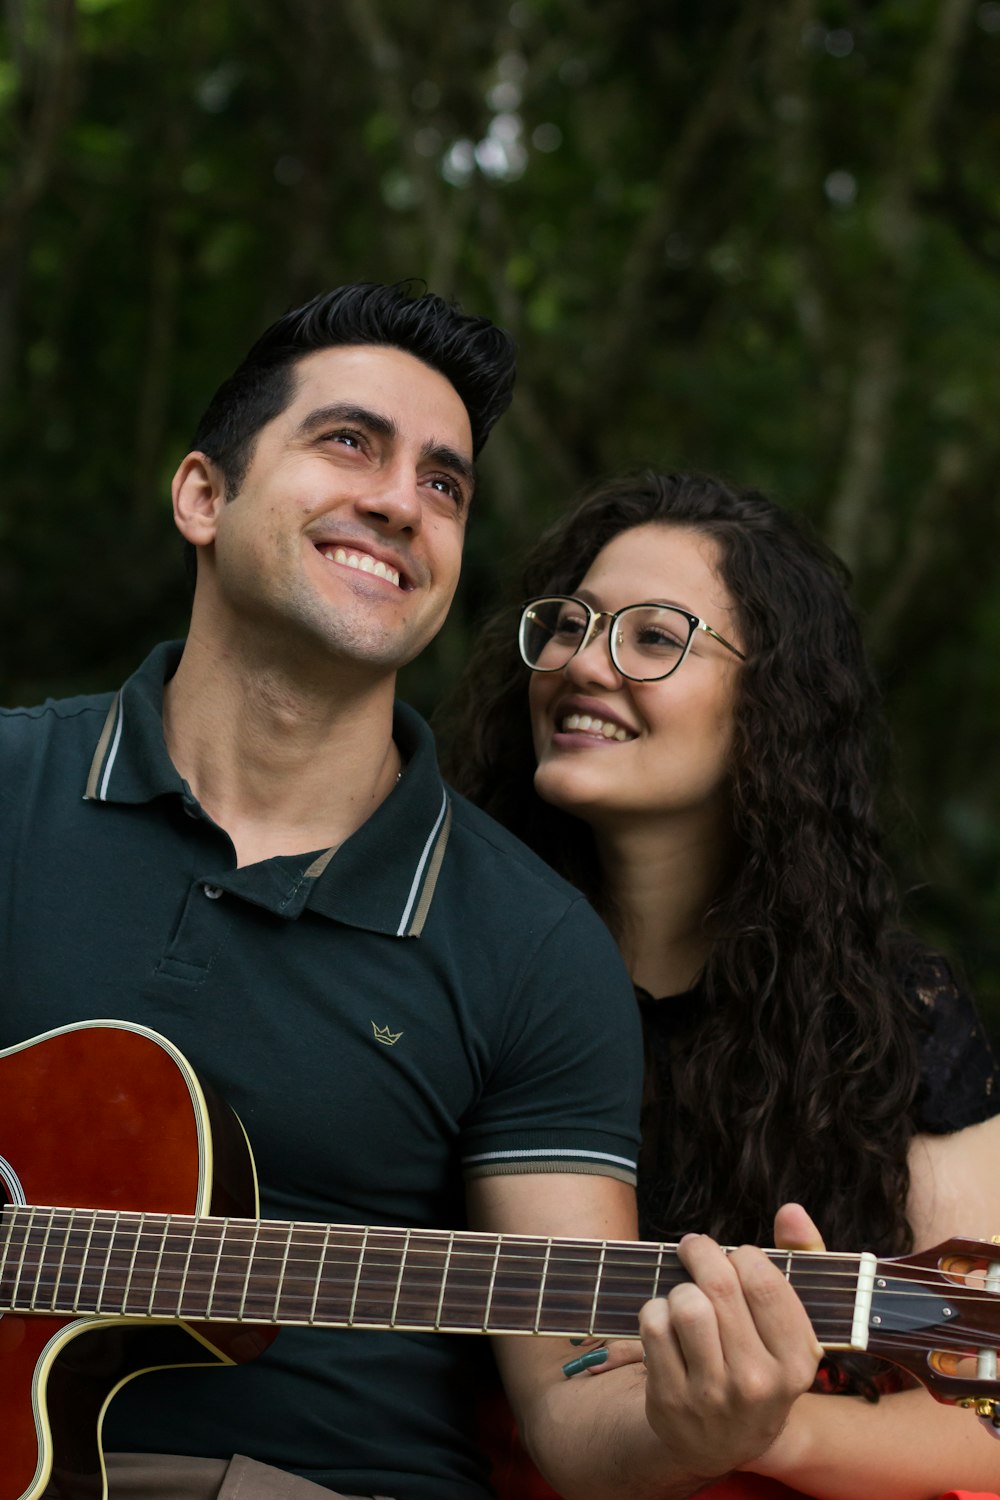 Photographie sélective de mise au point d’une femme souriante à côté d’un homme qui joue de la guitare pendant la journée